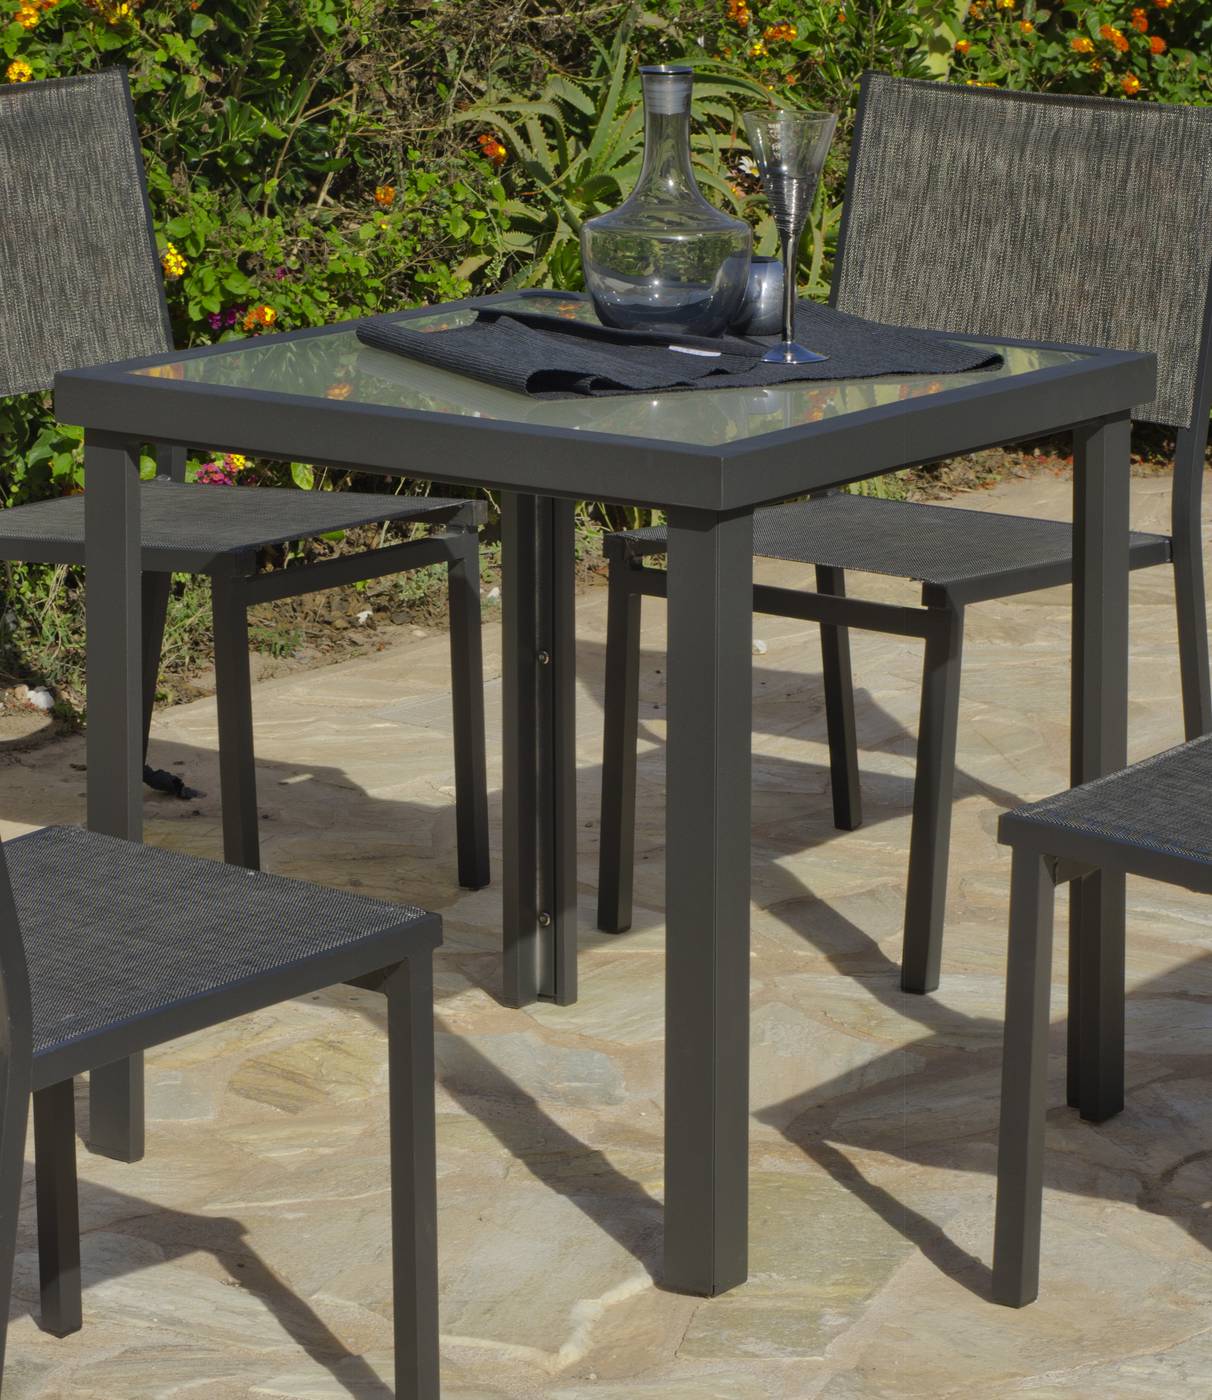 Set Aluminio Horizon-707/4 - Conjunto de aluminio color antracita: 1 mesa cuadrada de 70 cm. + 4 sillas de alumino y textilen